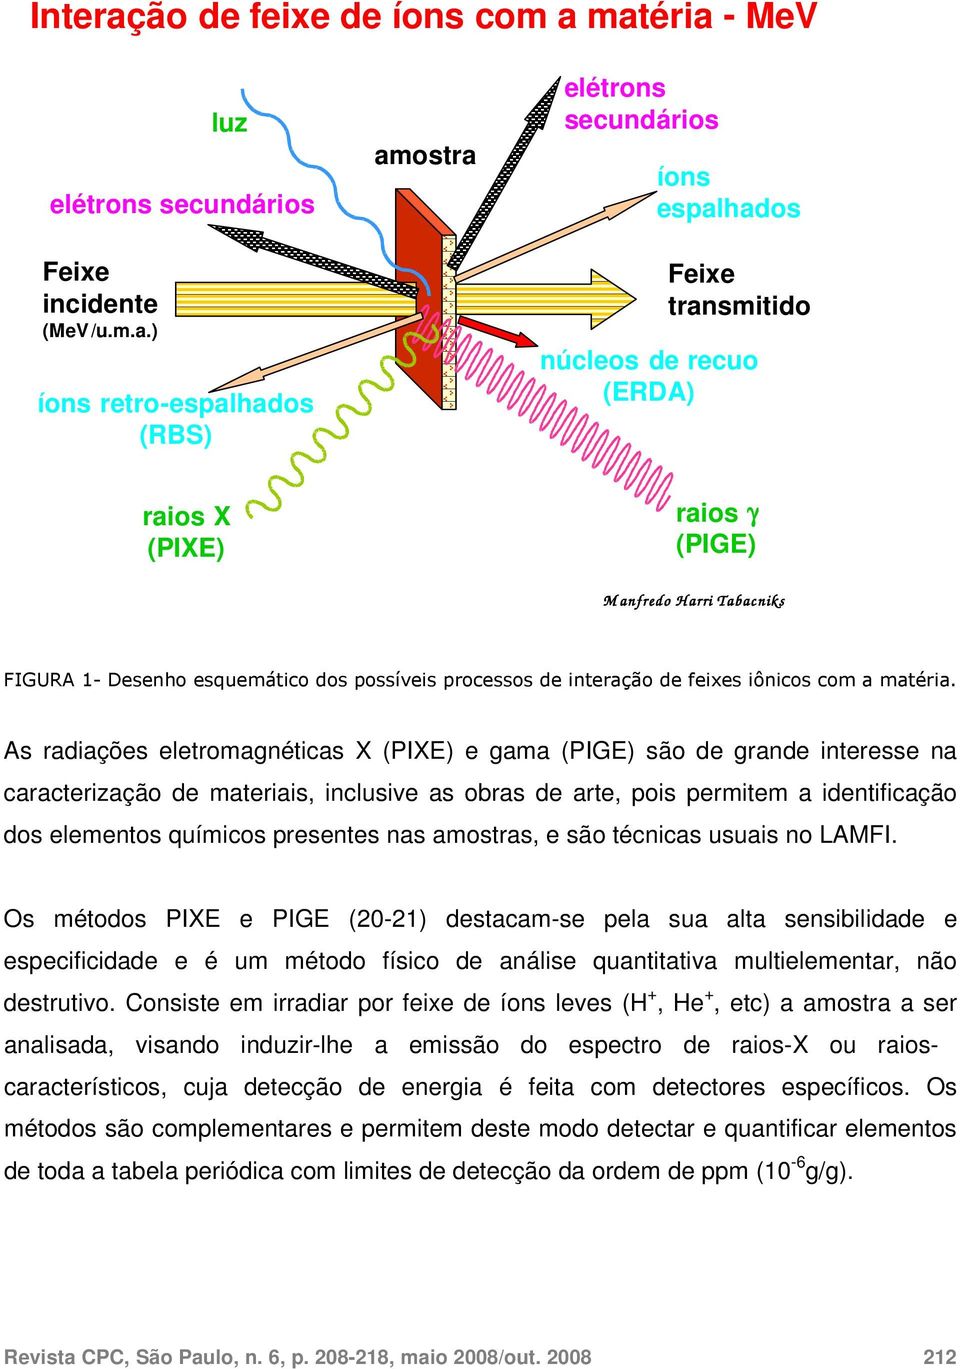 matéria - MeV Feixe incidente ( MeV /u.m.a.) luz elétrons secundários íons retro - espalhados (RBS) amostra elétrons secundários íons espalhados Feixe transmitido núcleos de recuo (ERDA) raios X